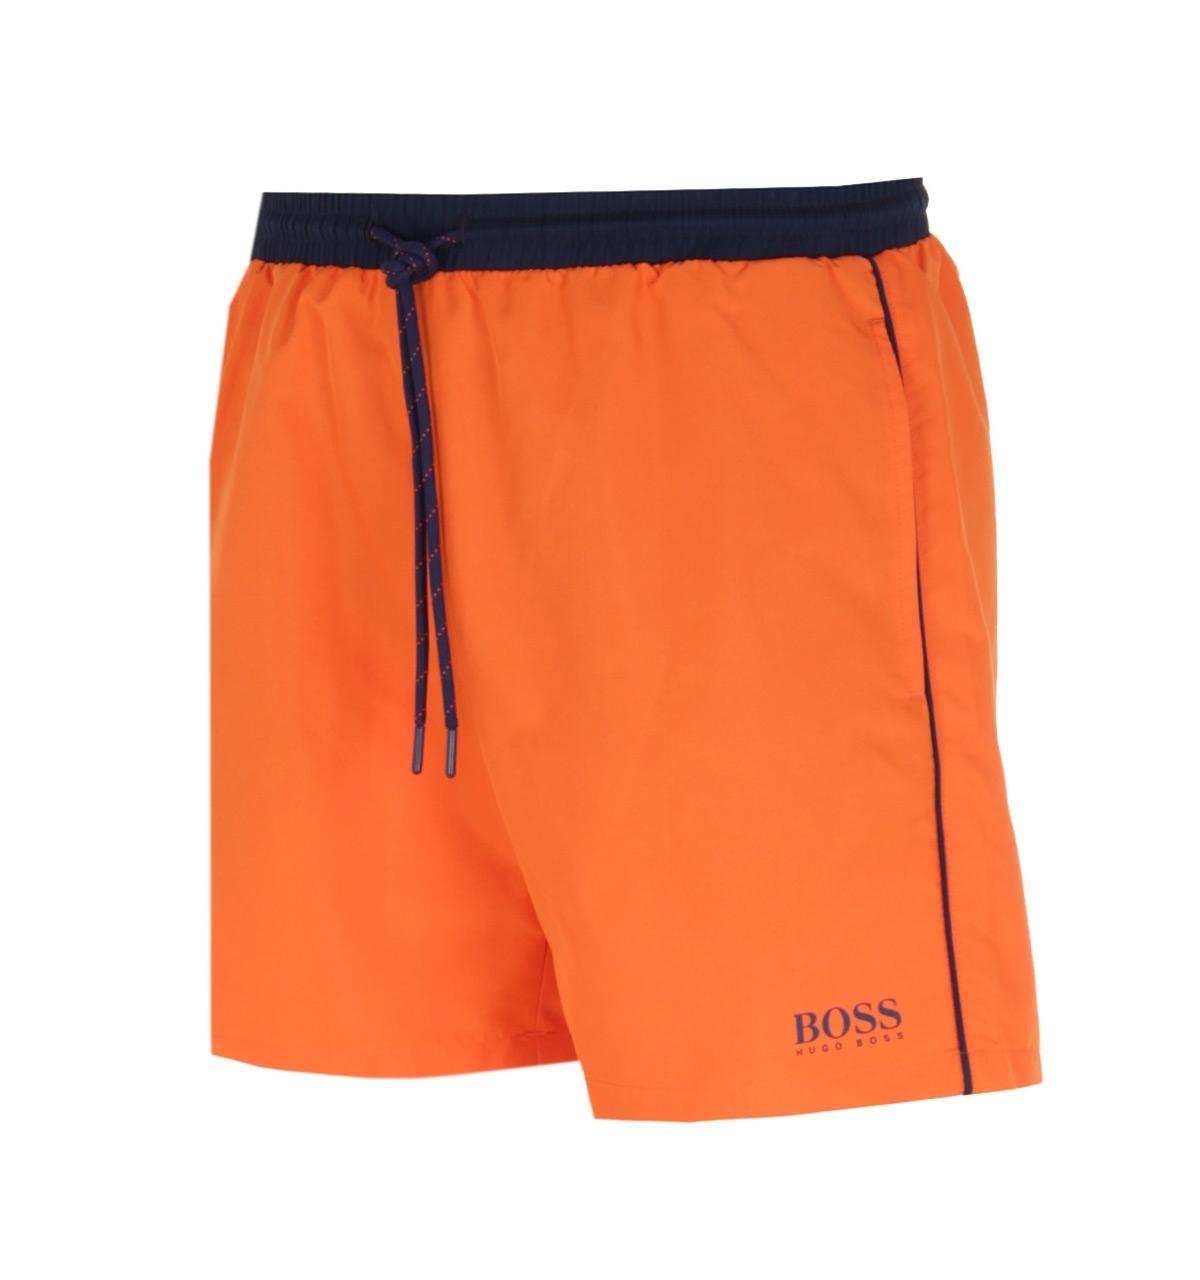 Hugo Boss Orange Swim Shorts Sale, SAVE 59% - eagleflair.com